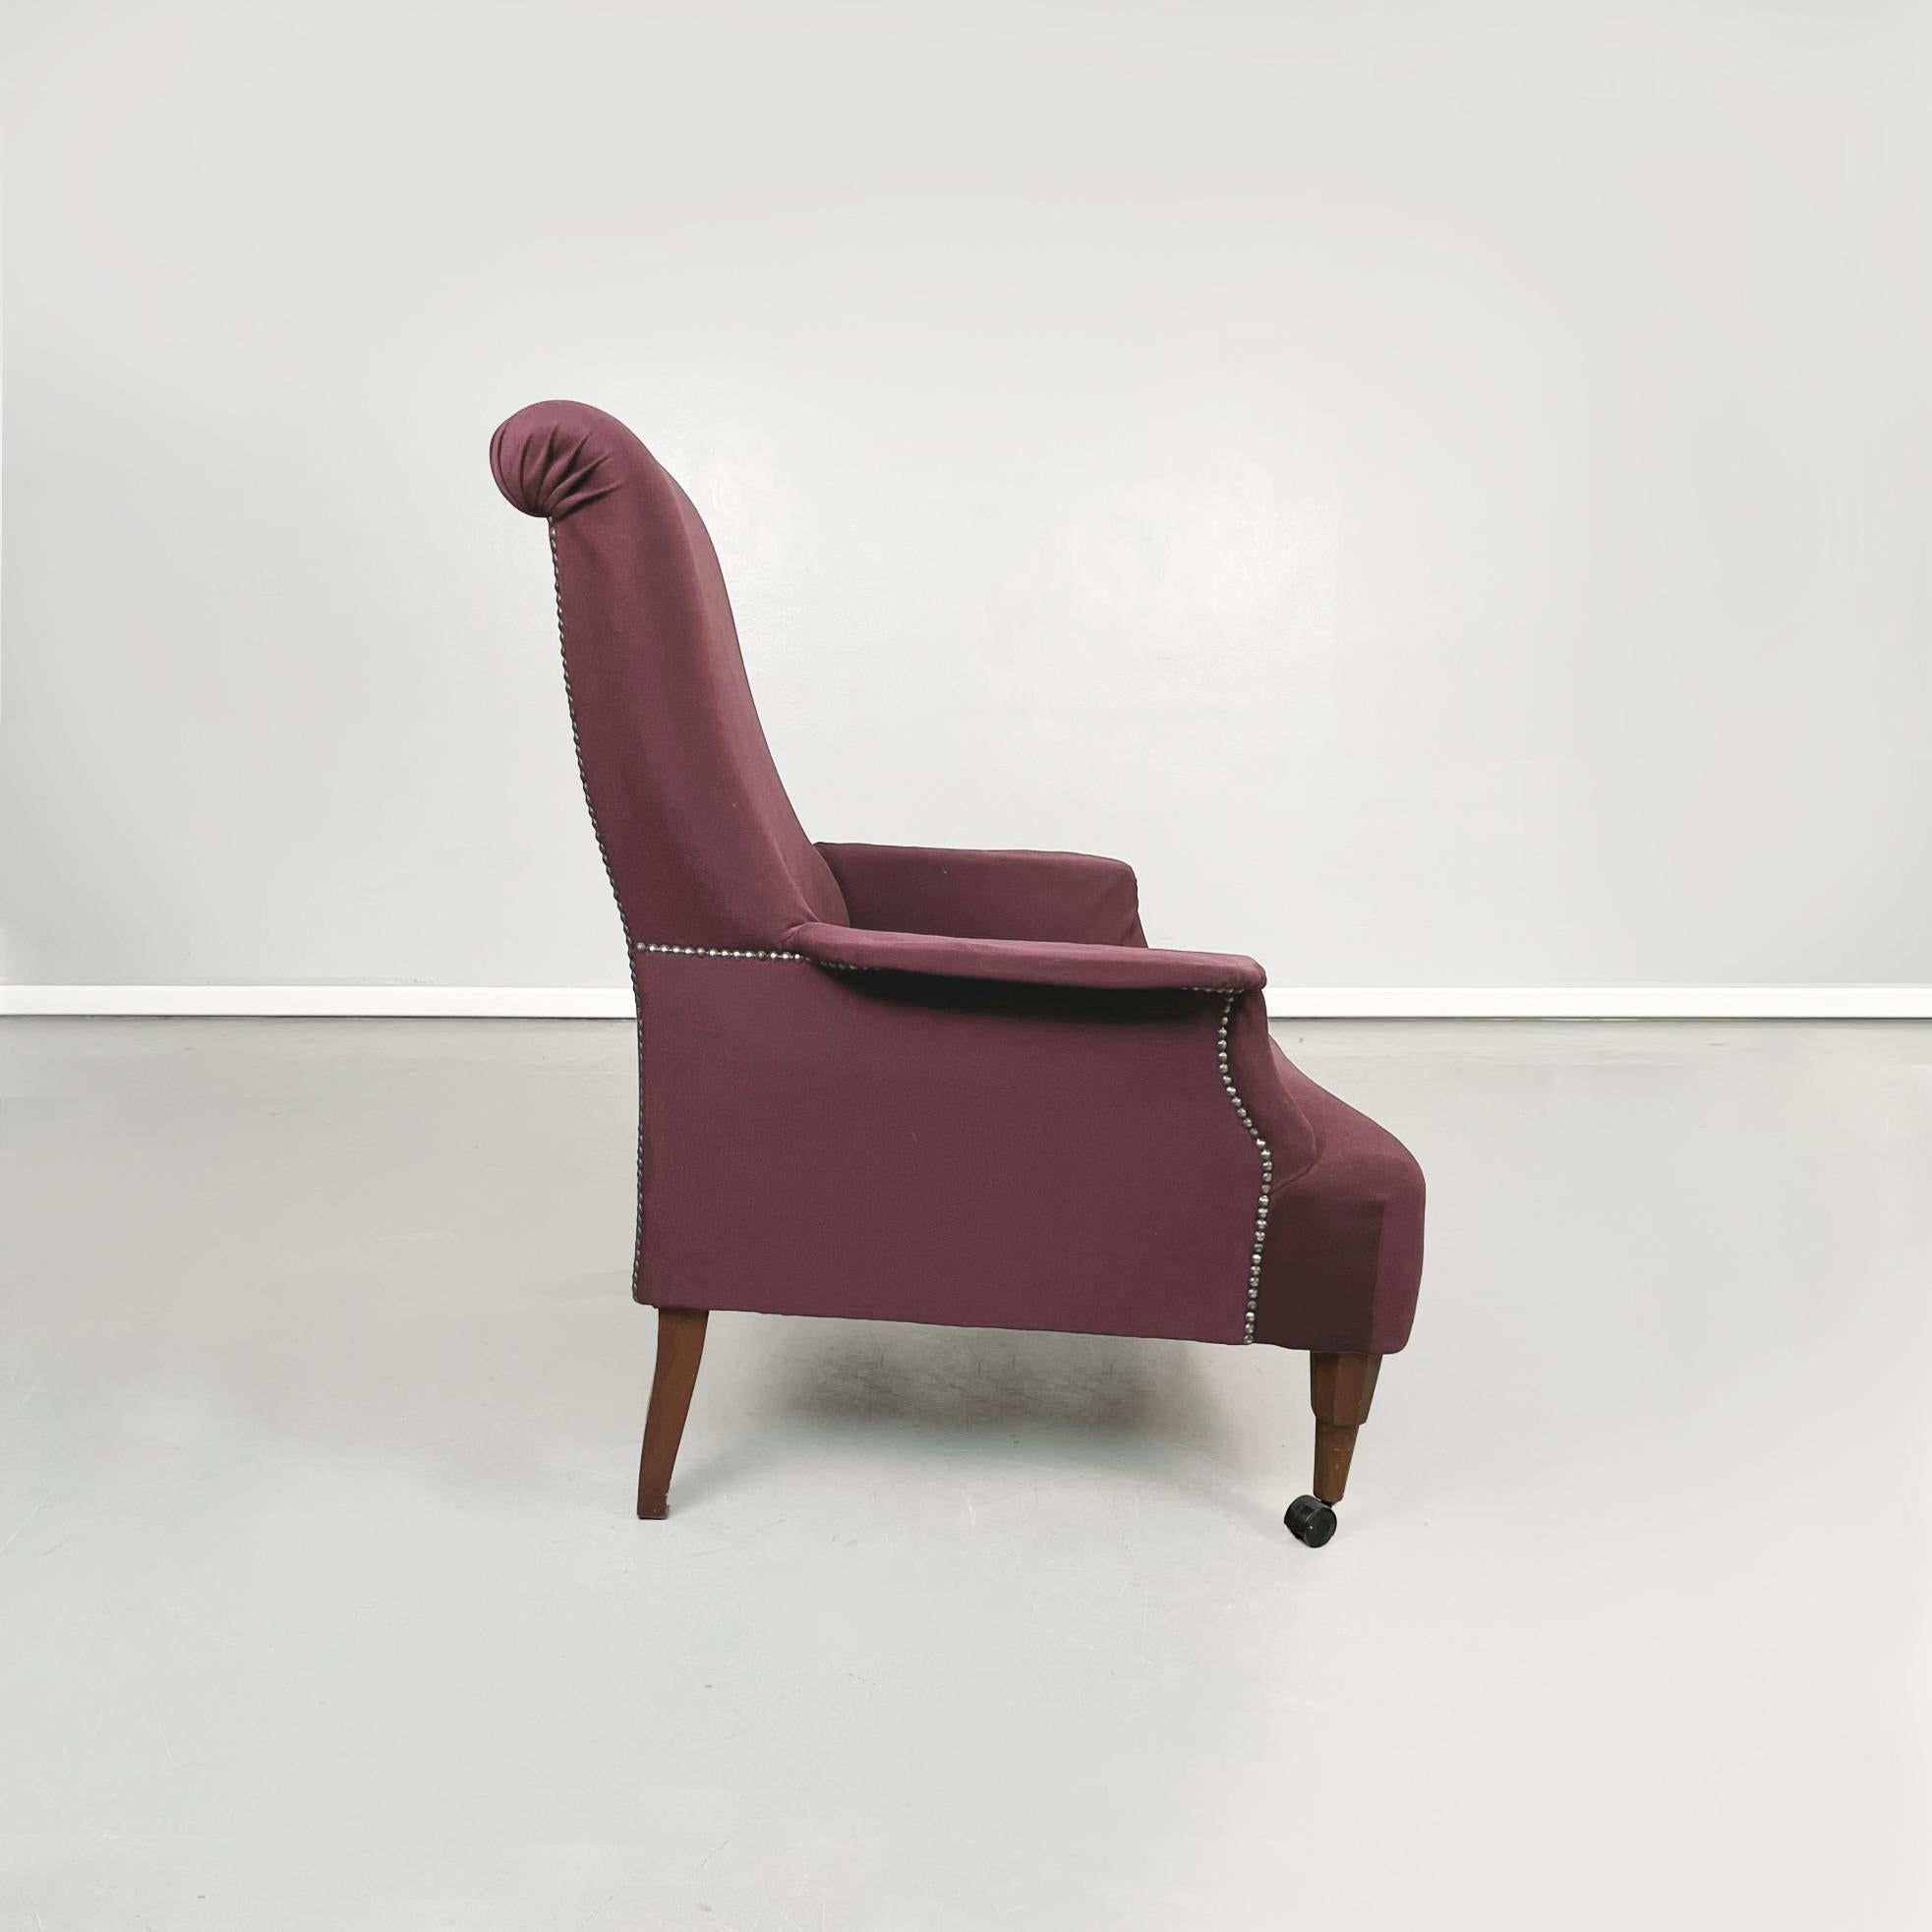 purple arm chairs